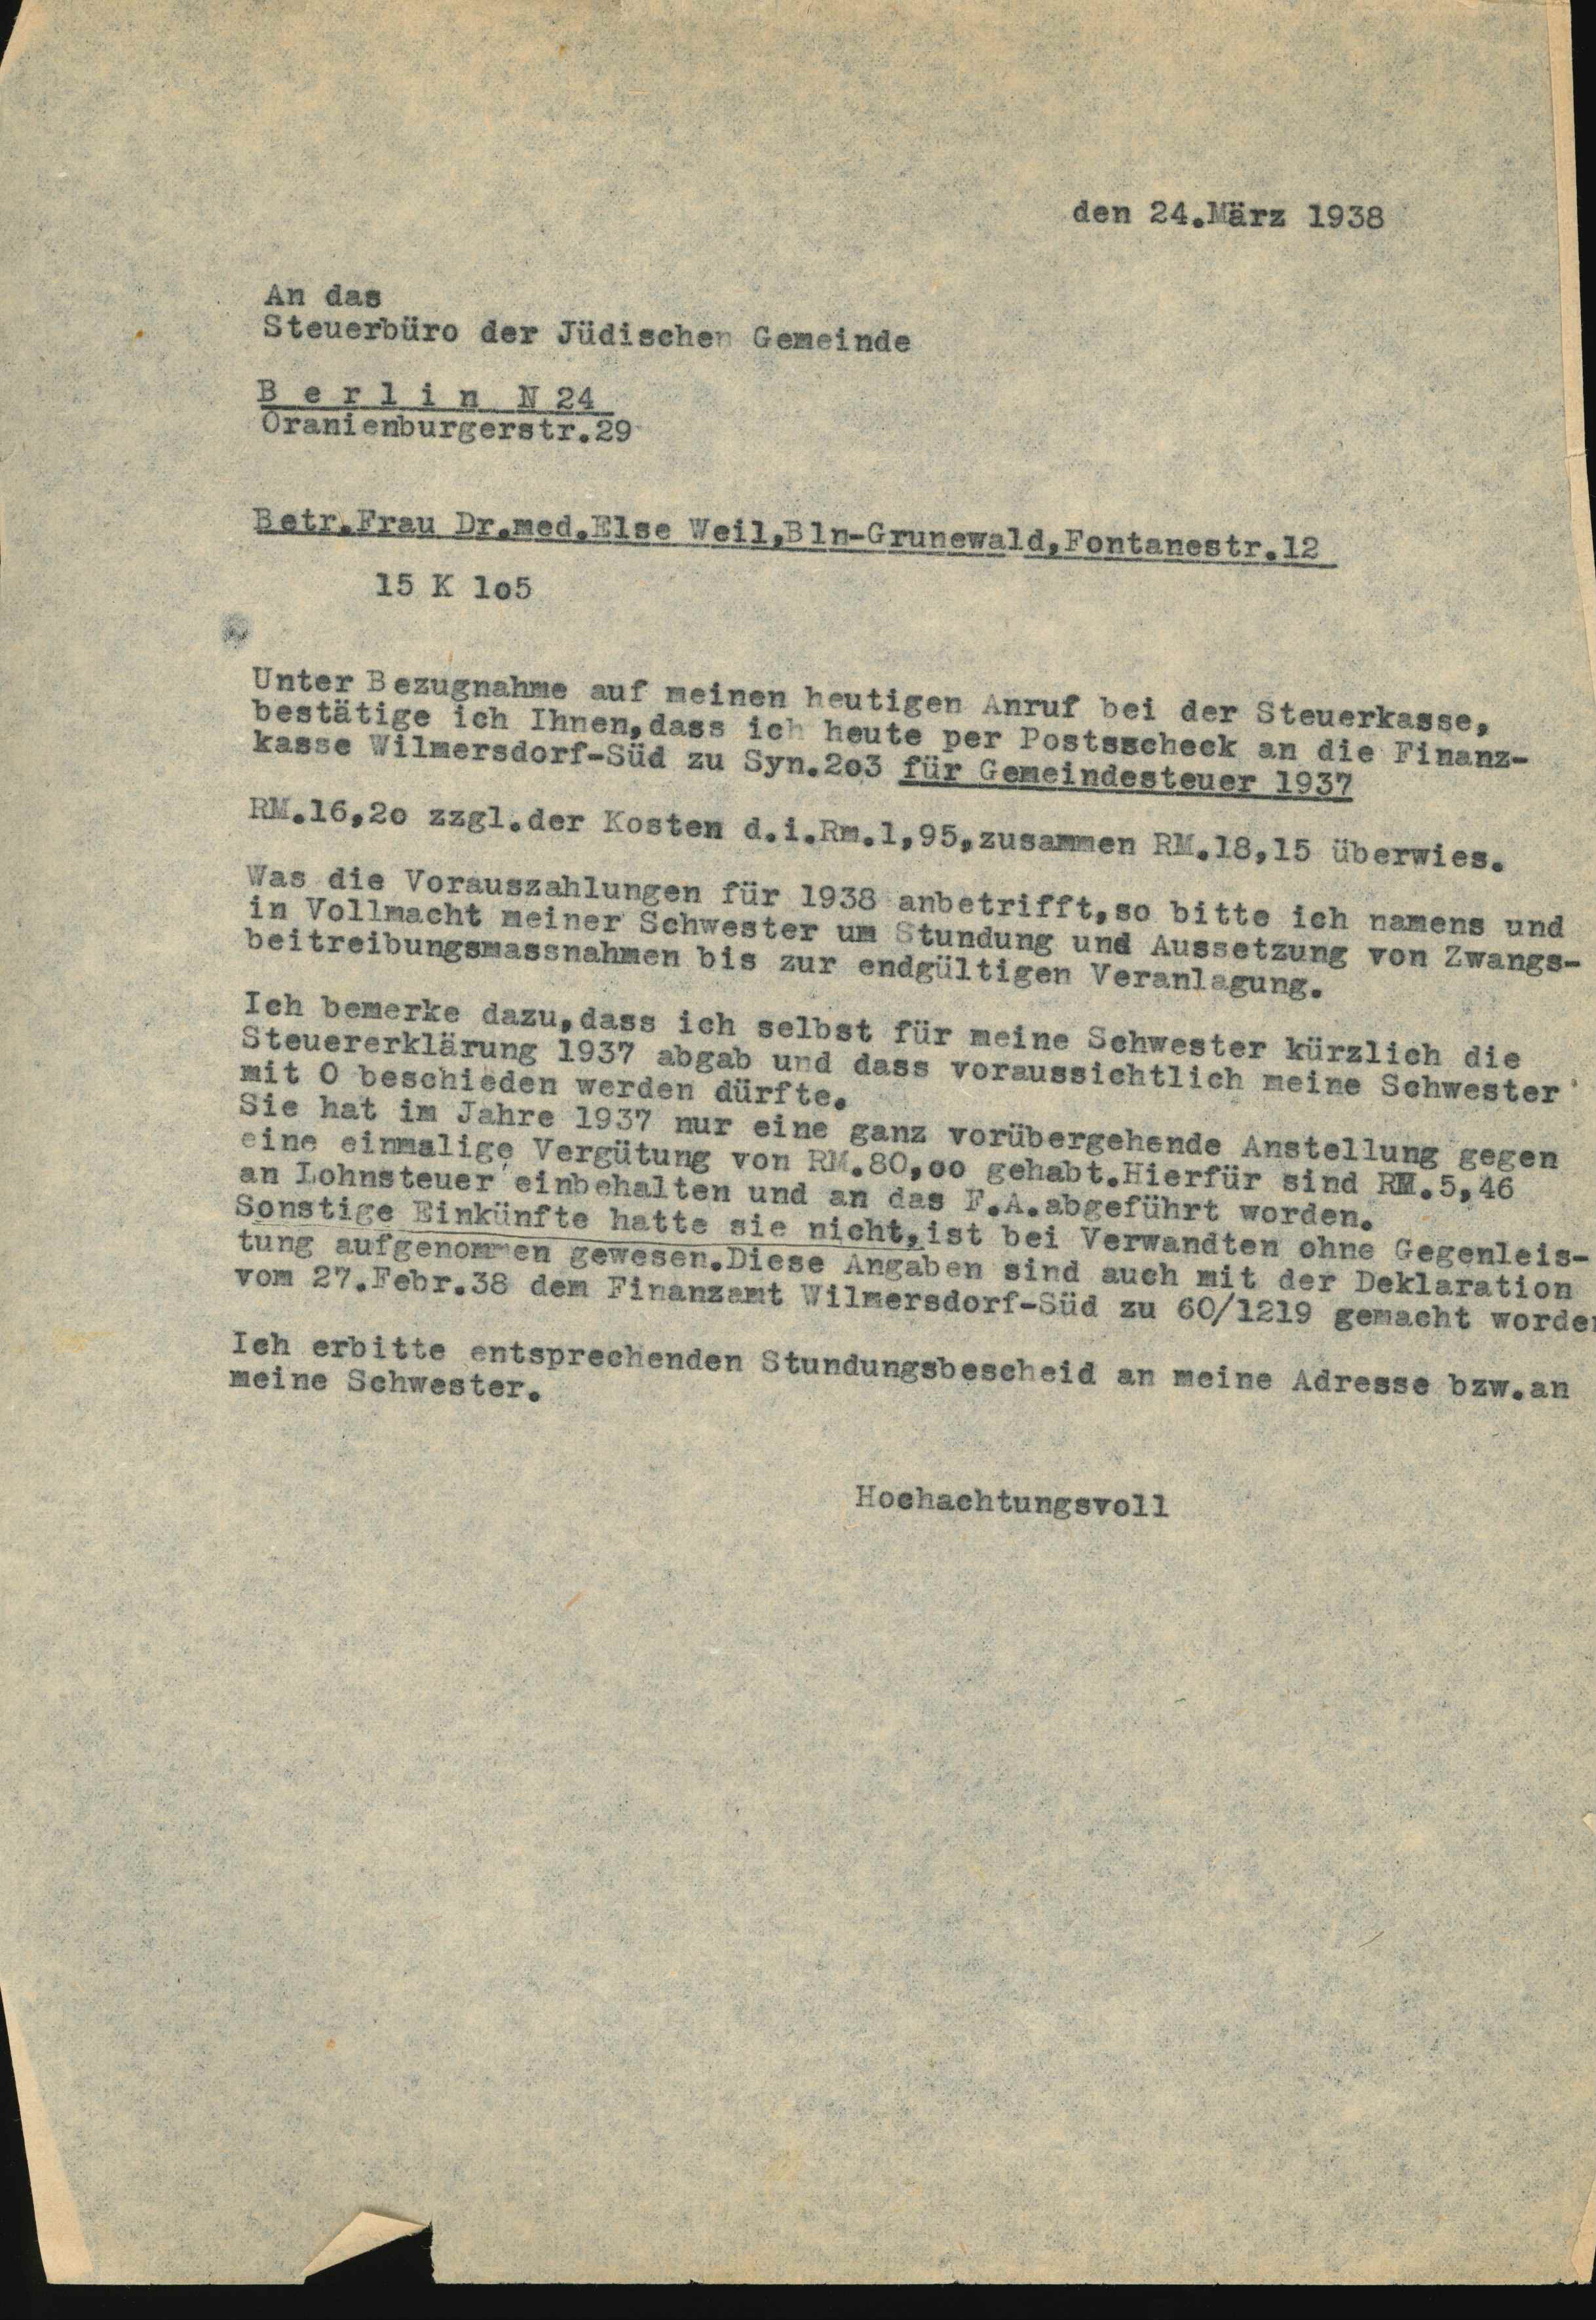 Brief an Steuerbüro der Jüdischen Gemeinde Berlin, Else Weil 1938 (KTL CC BY-NC-SA)